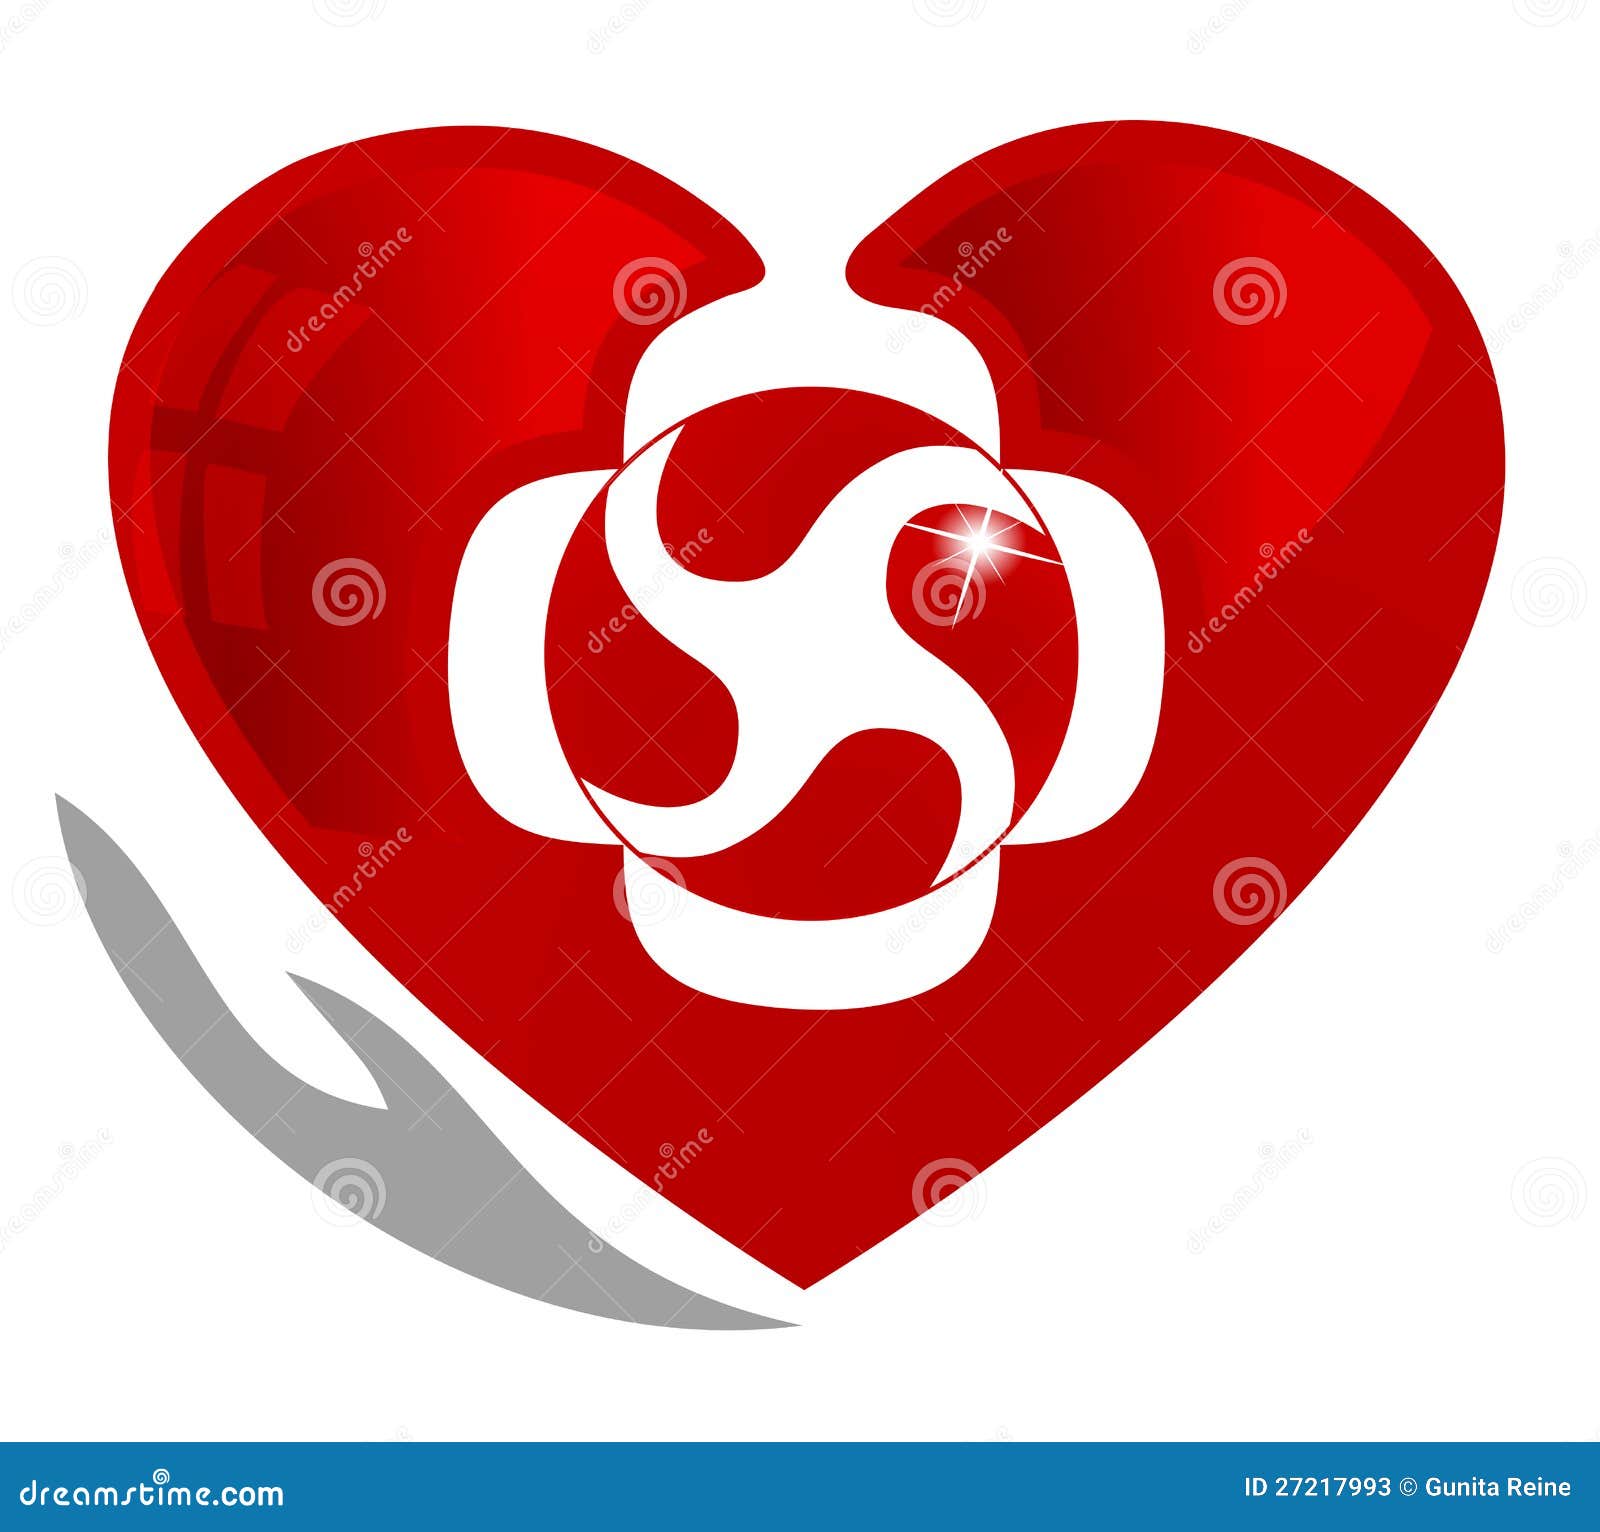 Символ циркуляции крови. Символ кардиологии, медицинских и здоровых сердца. Сердце символизирует циркуляцию крови в сердце и повсеместно в тело. Рука символизирует излечивать и предохранение системы кровообращения.